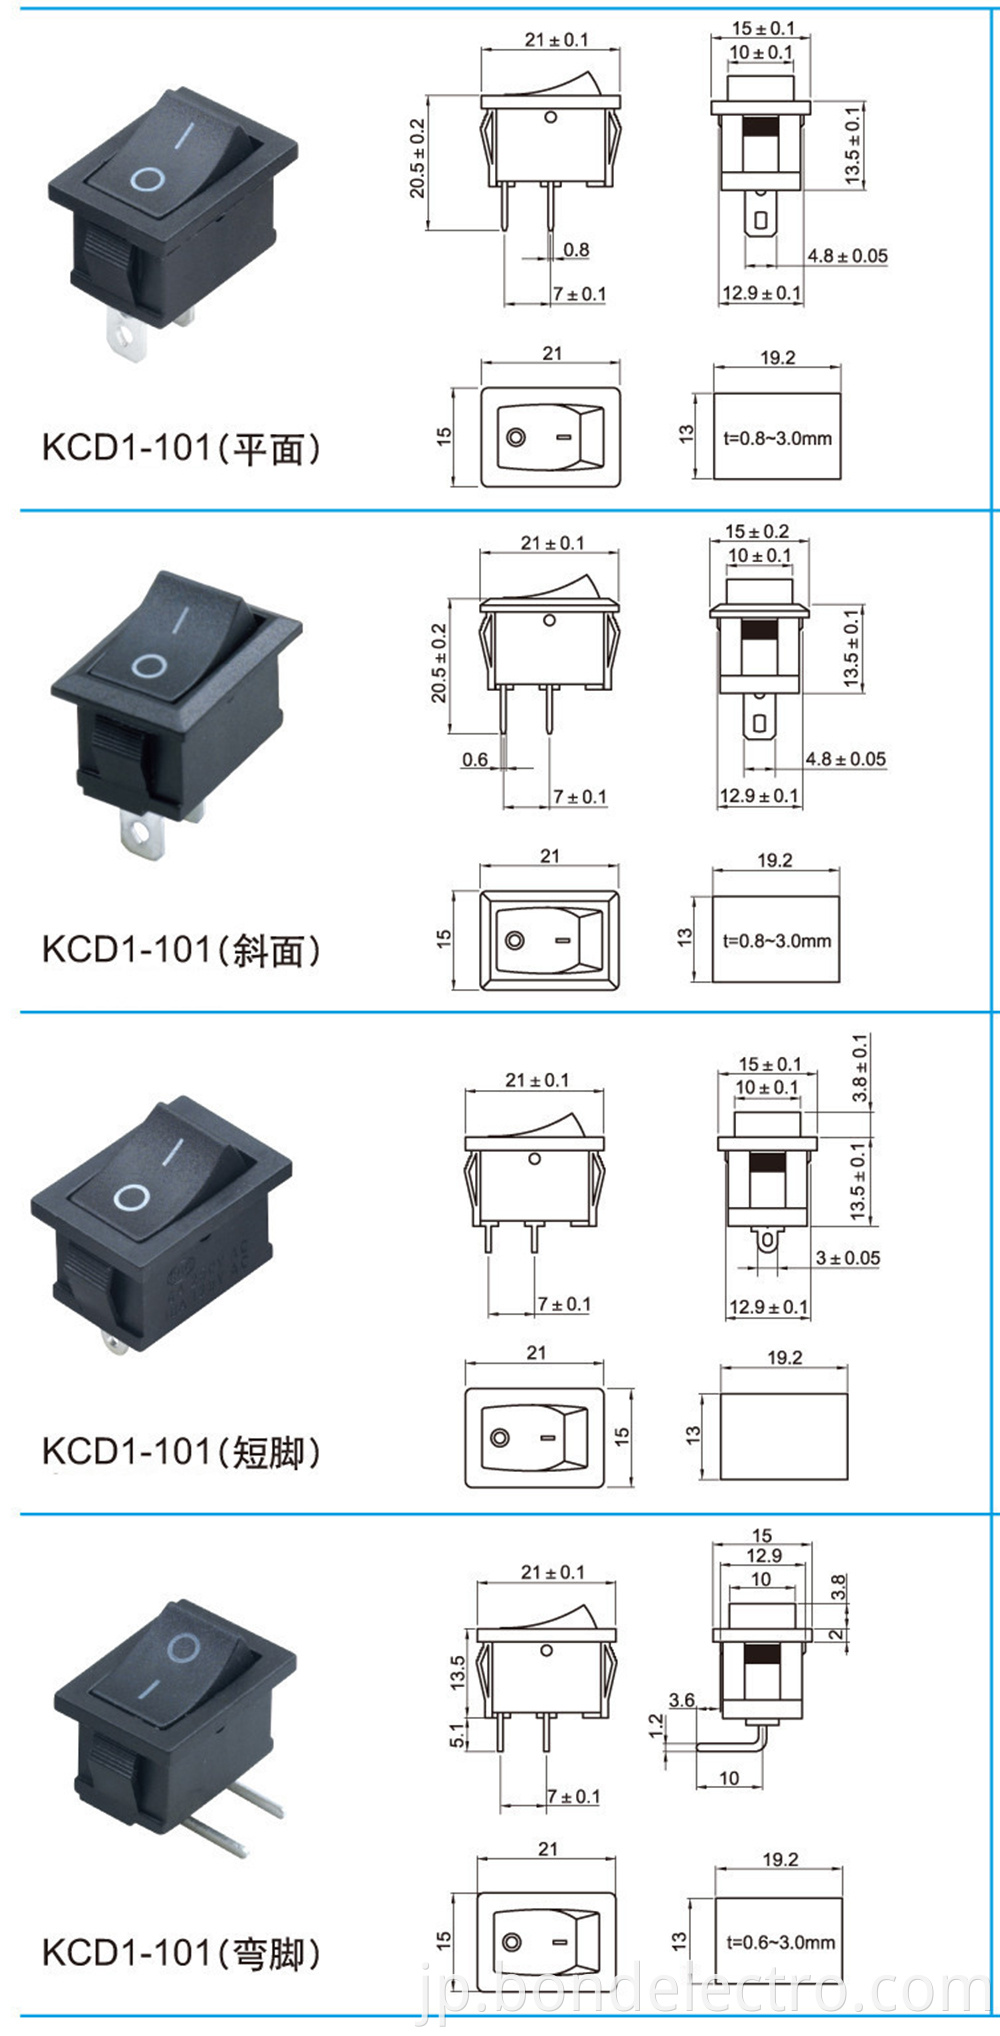 KCD1-101 Series Parameters